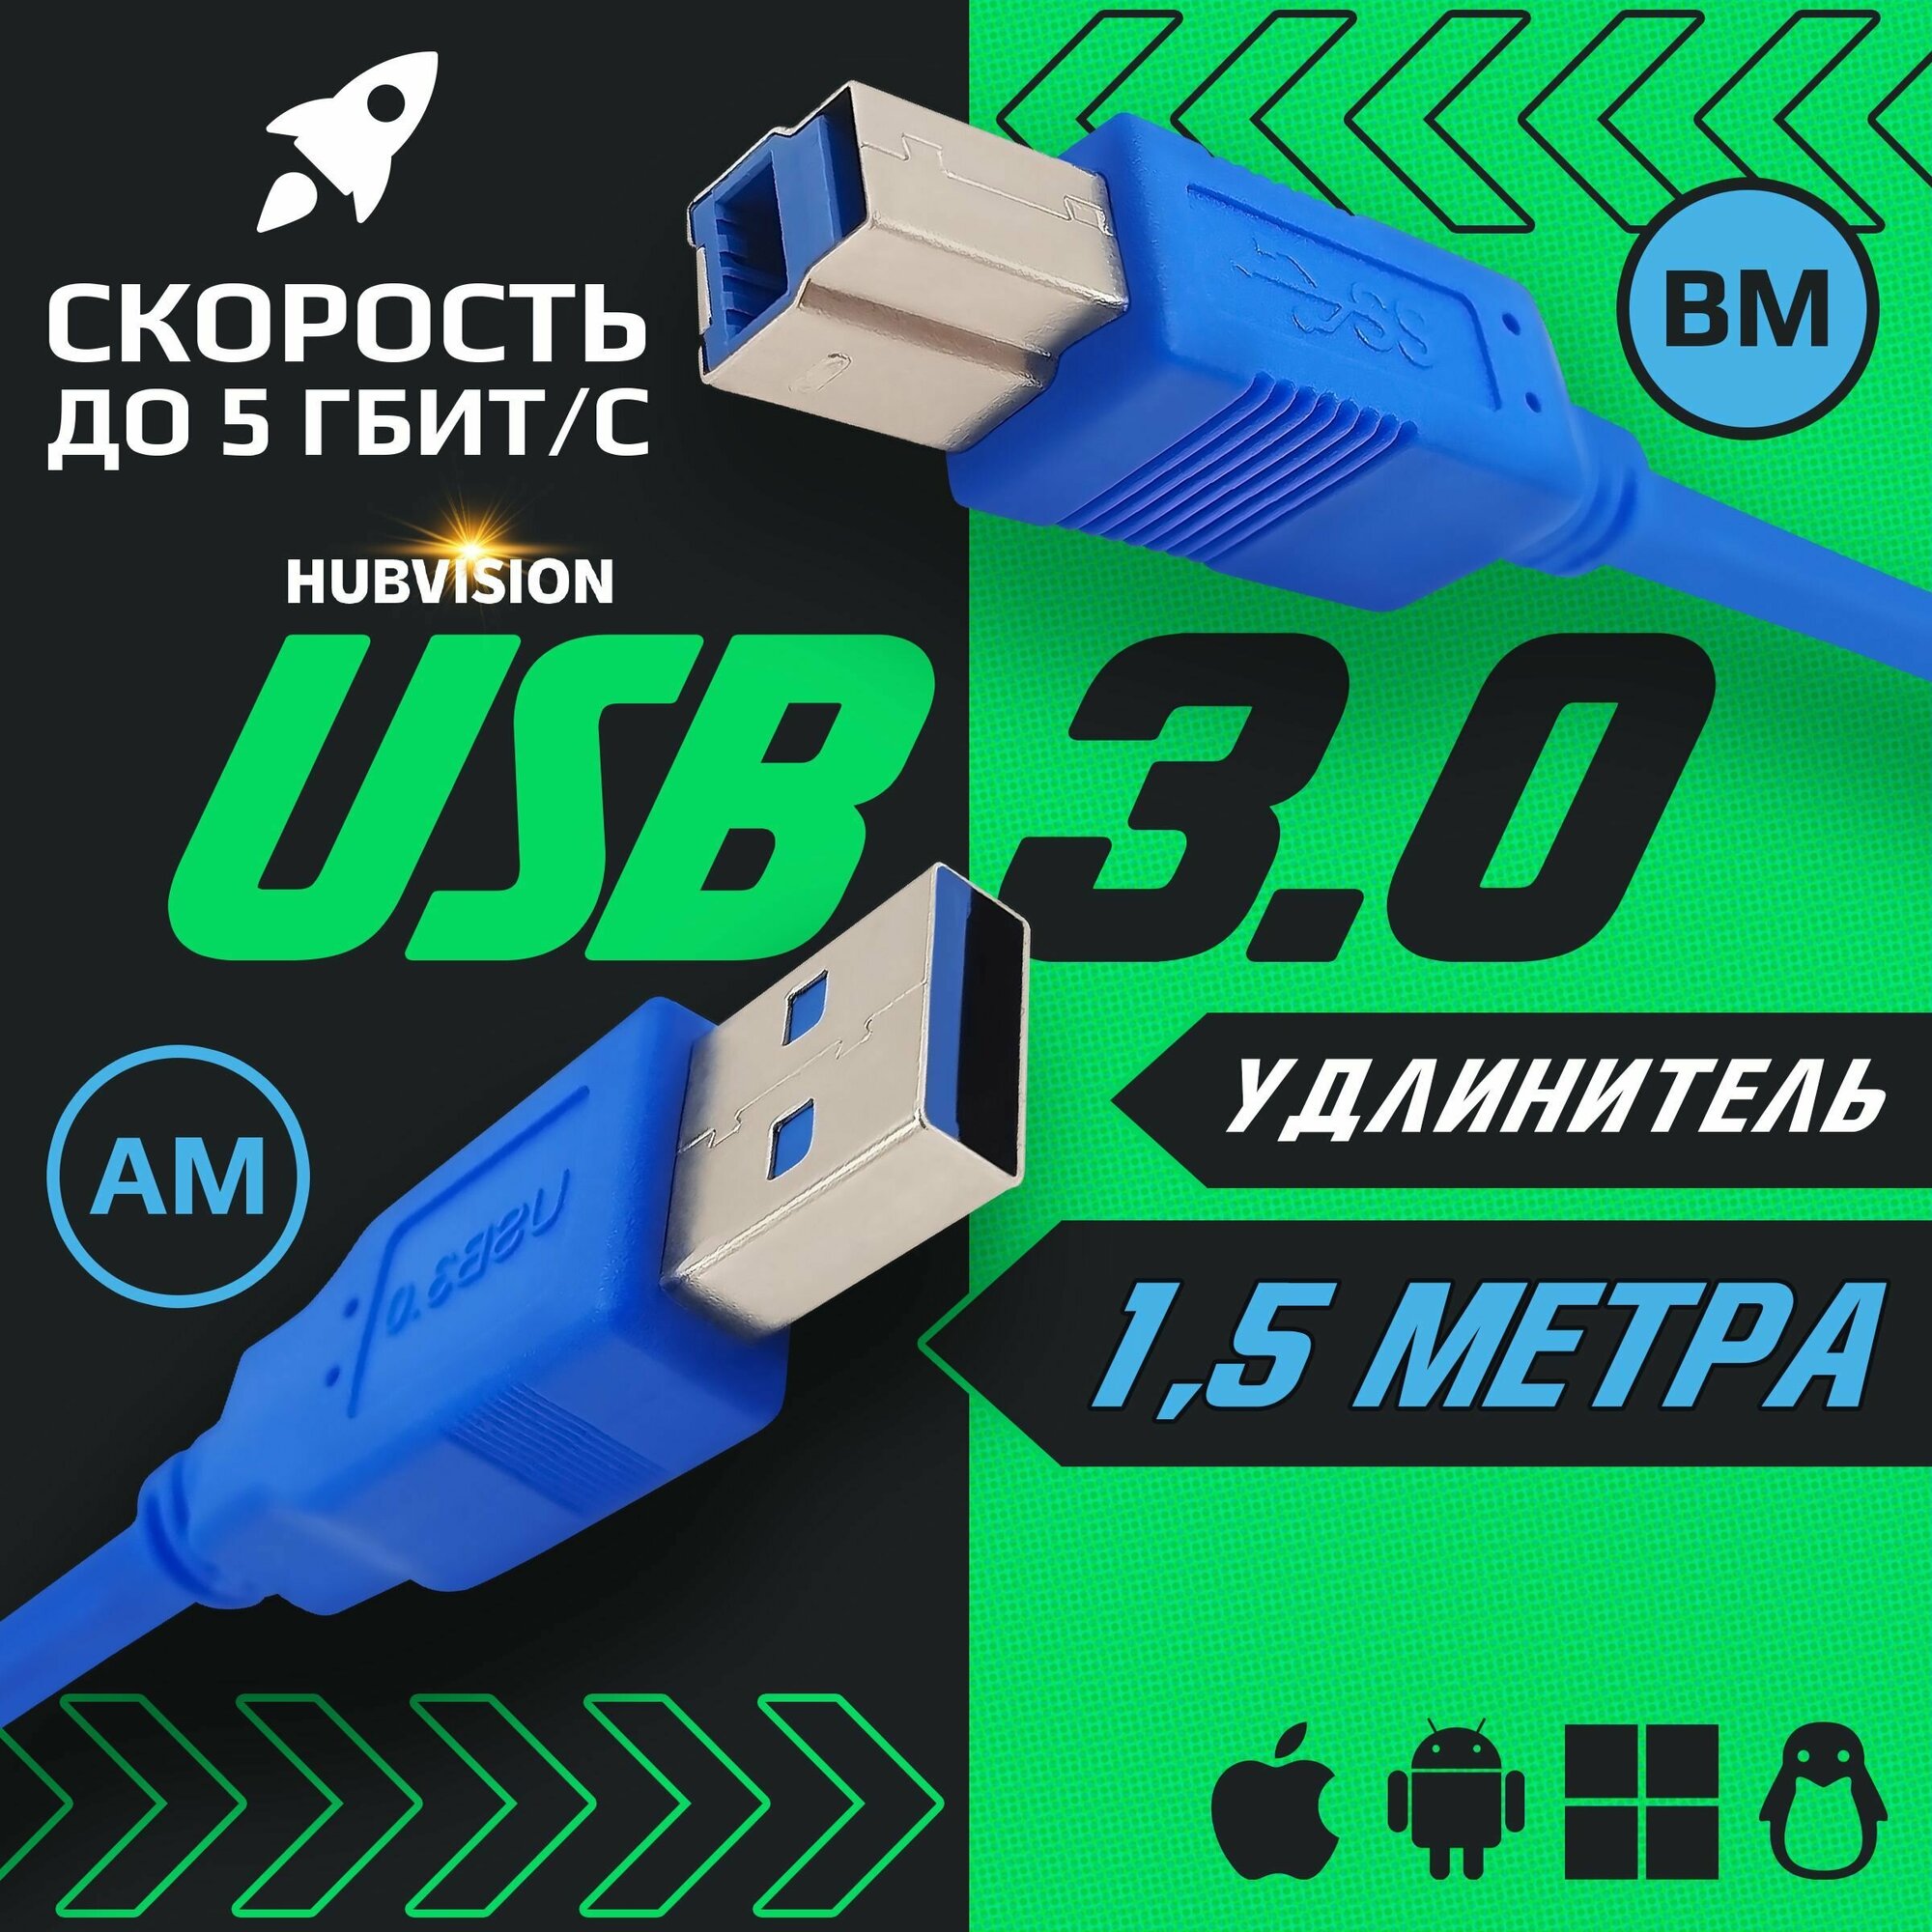 Кабель удлинитель USB 3.0 (AM - BM / папа - папа ) 1.5 метра, синий